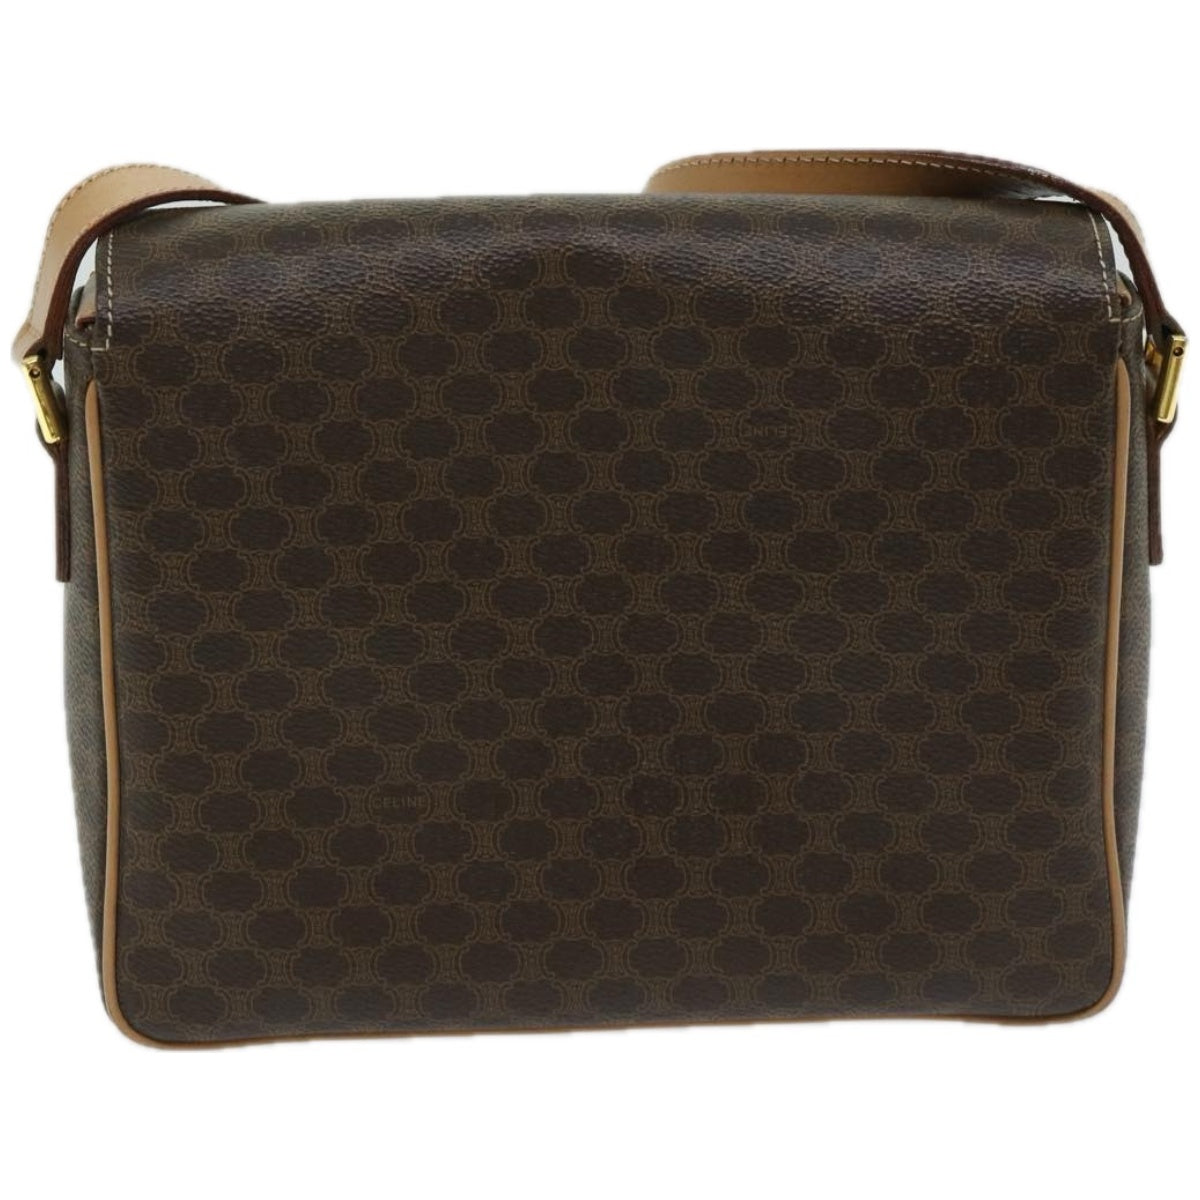 CELINE Macadam Canvas Shoulder Bag PVC Leather Brown Auth 67580 - 0